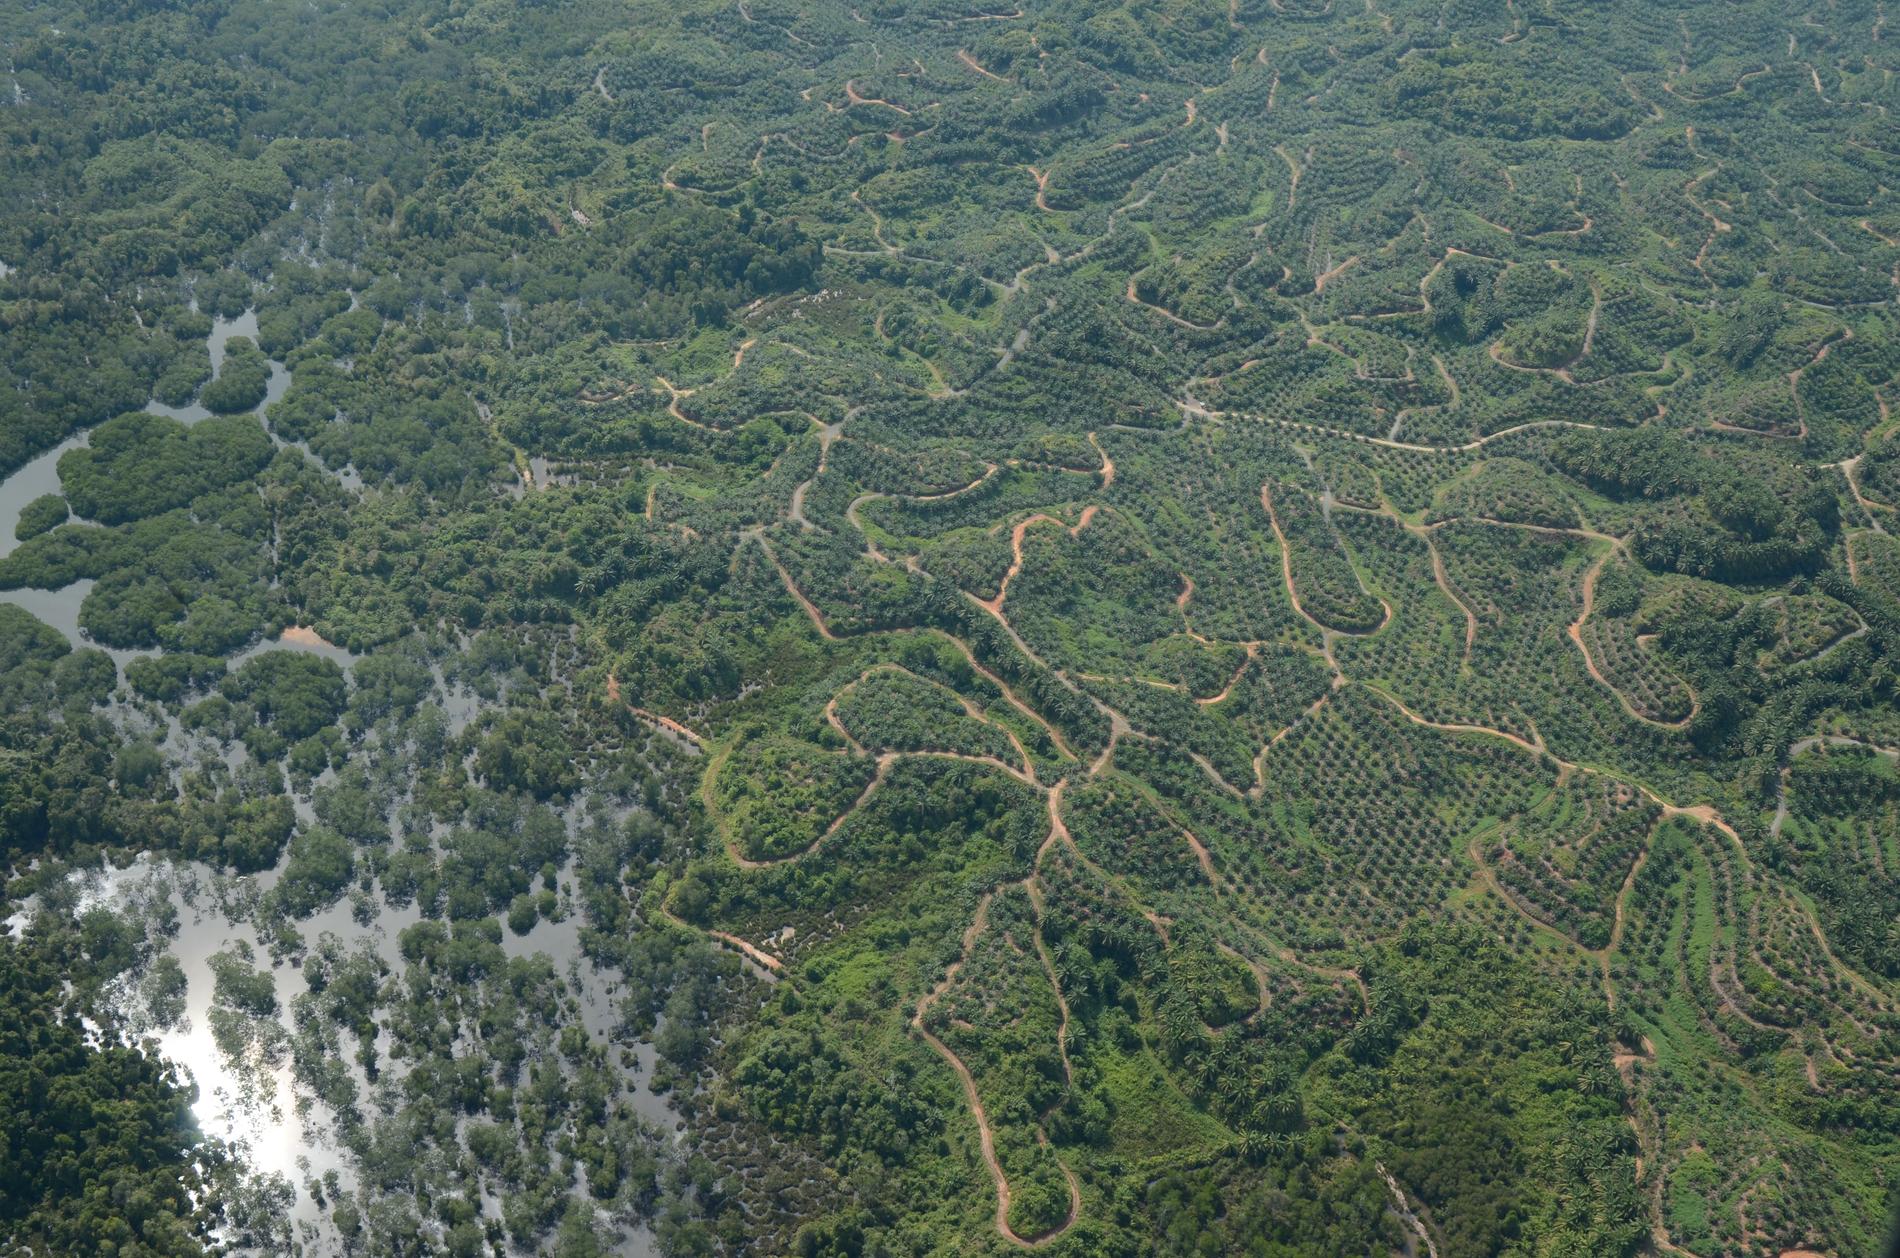 Vägnätet på Borneo växer i omfattning för varje år med skövlad skog som resultat.